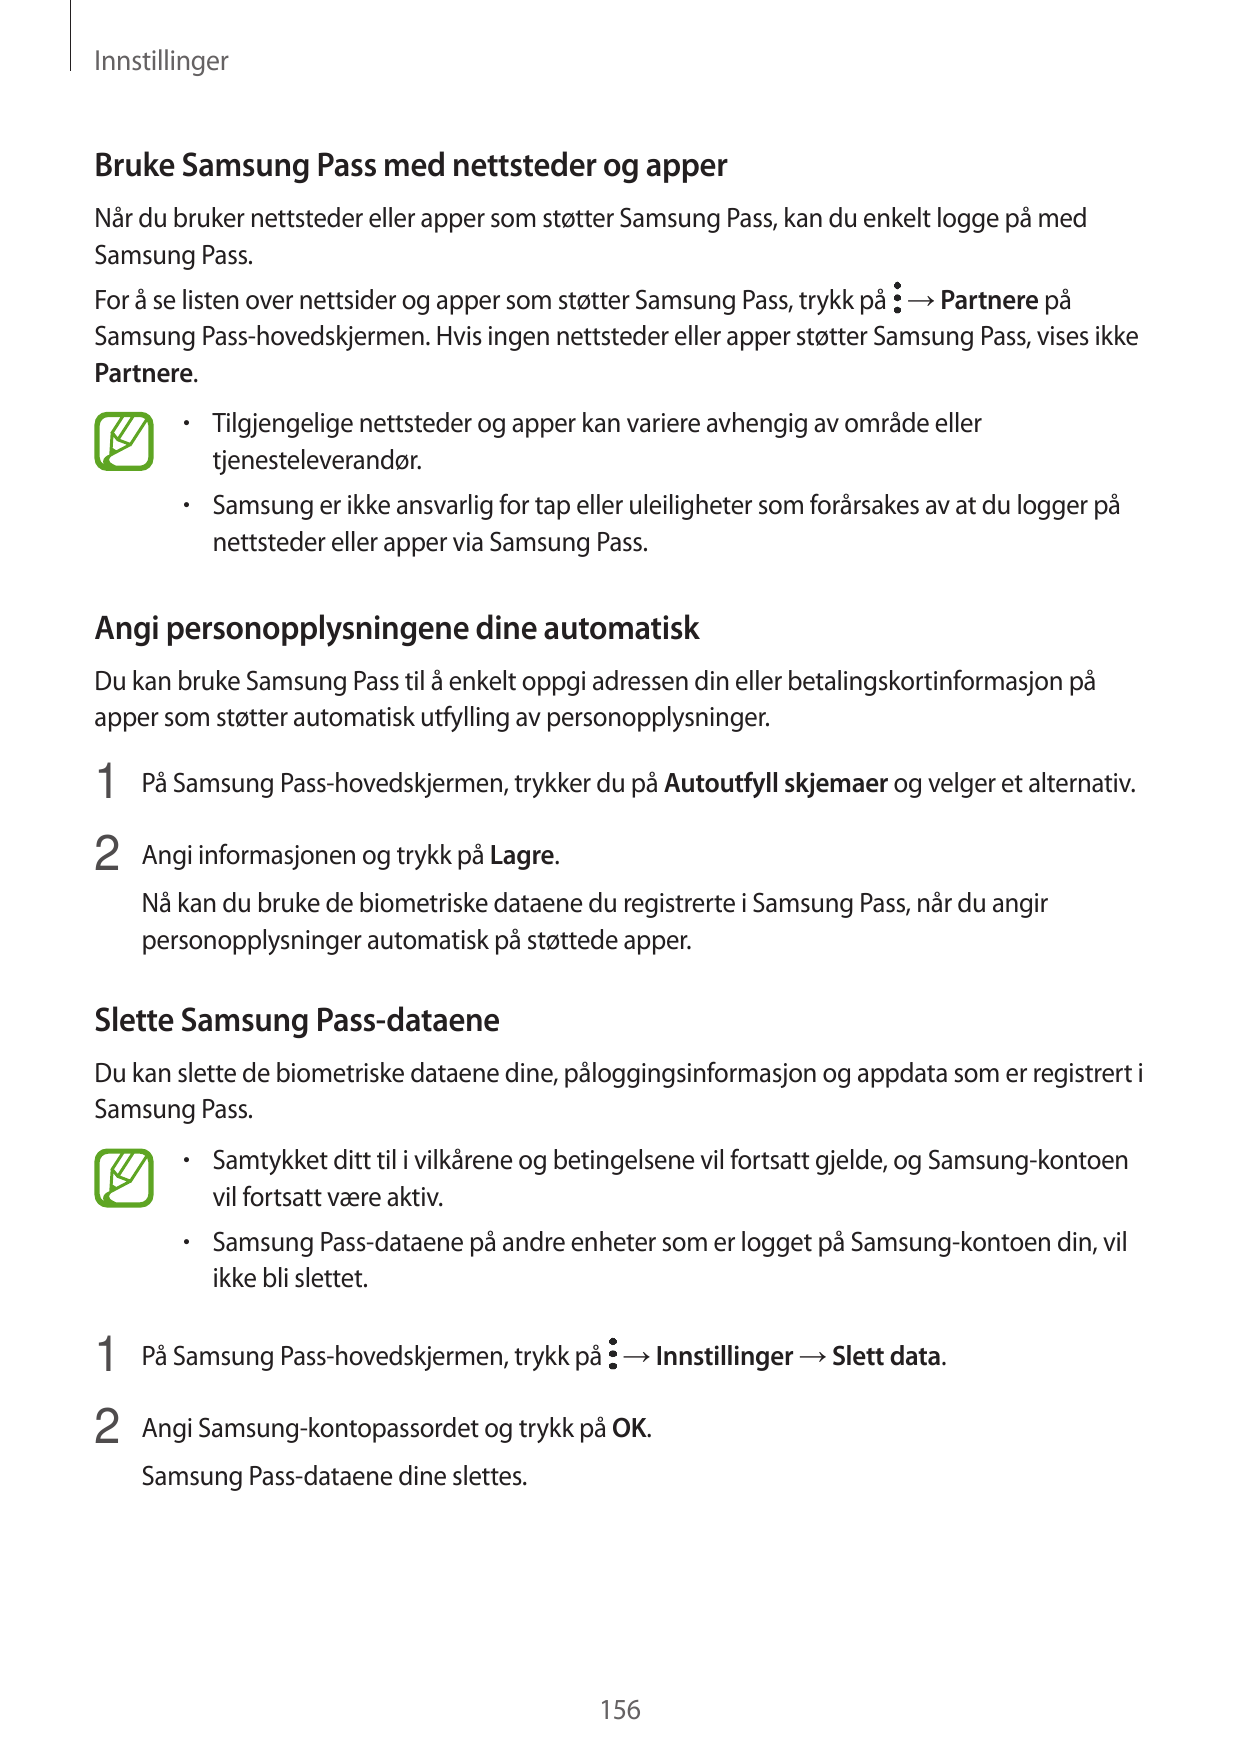 InnstillingerBruke Samsung Pass med nettsteder og apperNår du bruker nettsteder eller apper som støtter Samsung Pass, kan du enk